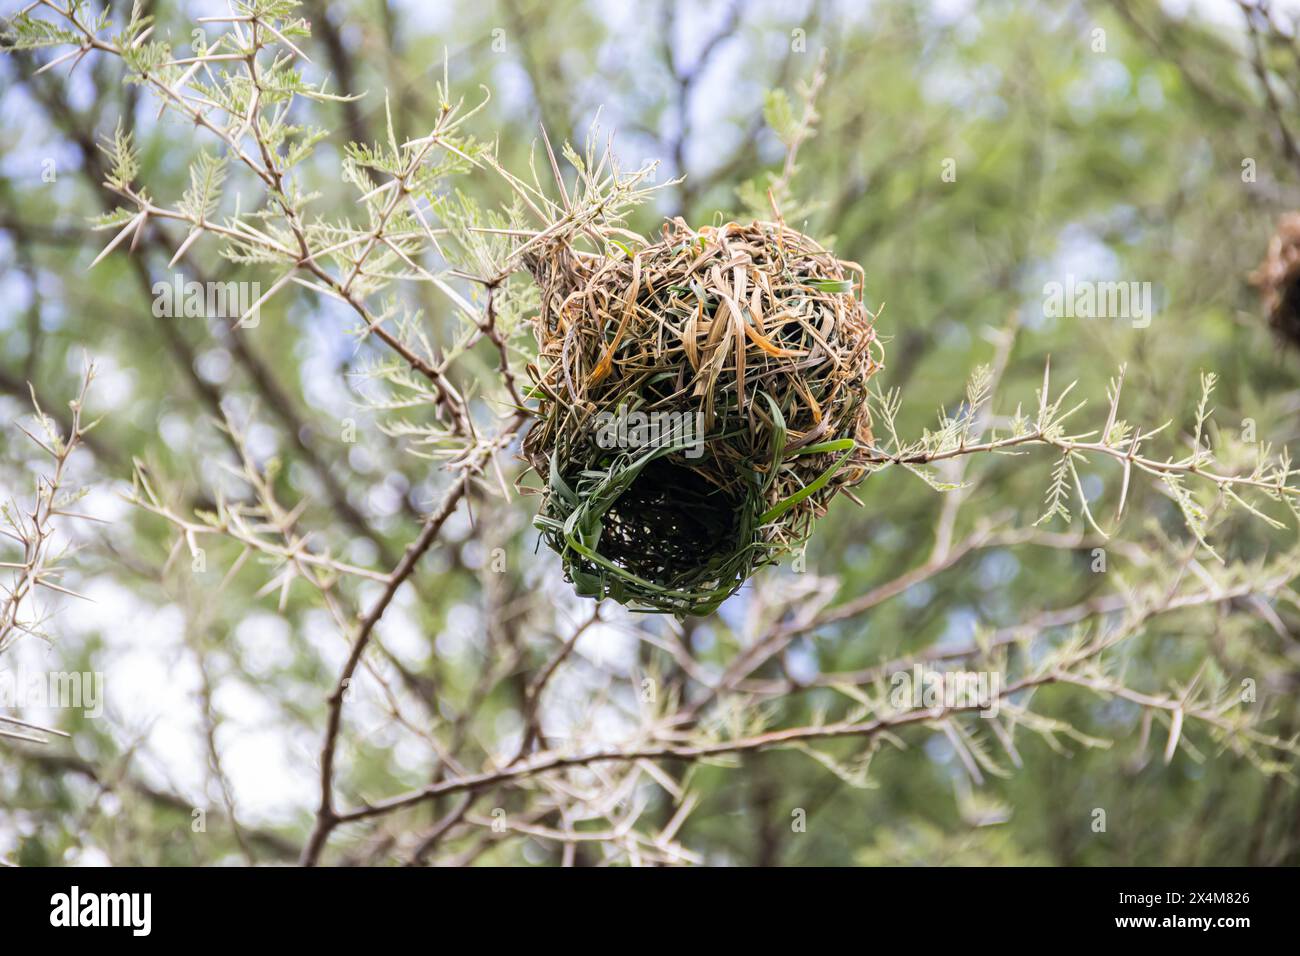 Un nido intrecciato, meticolosamente realizzato da uccelli provenienti da erba secca e rami, si trova in mezzo alla savana africana Foto Stock